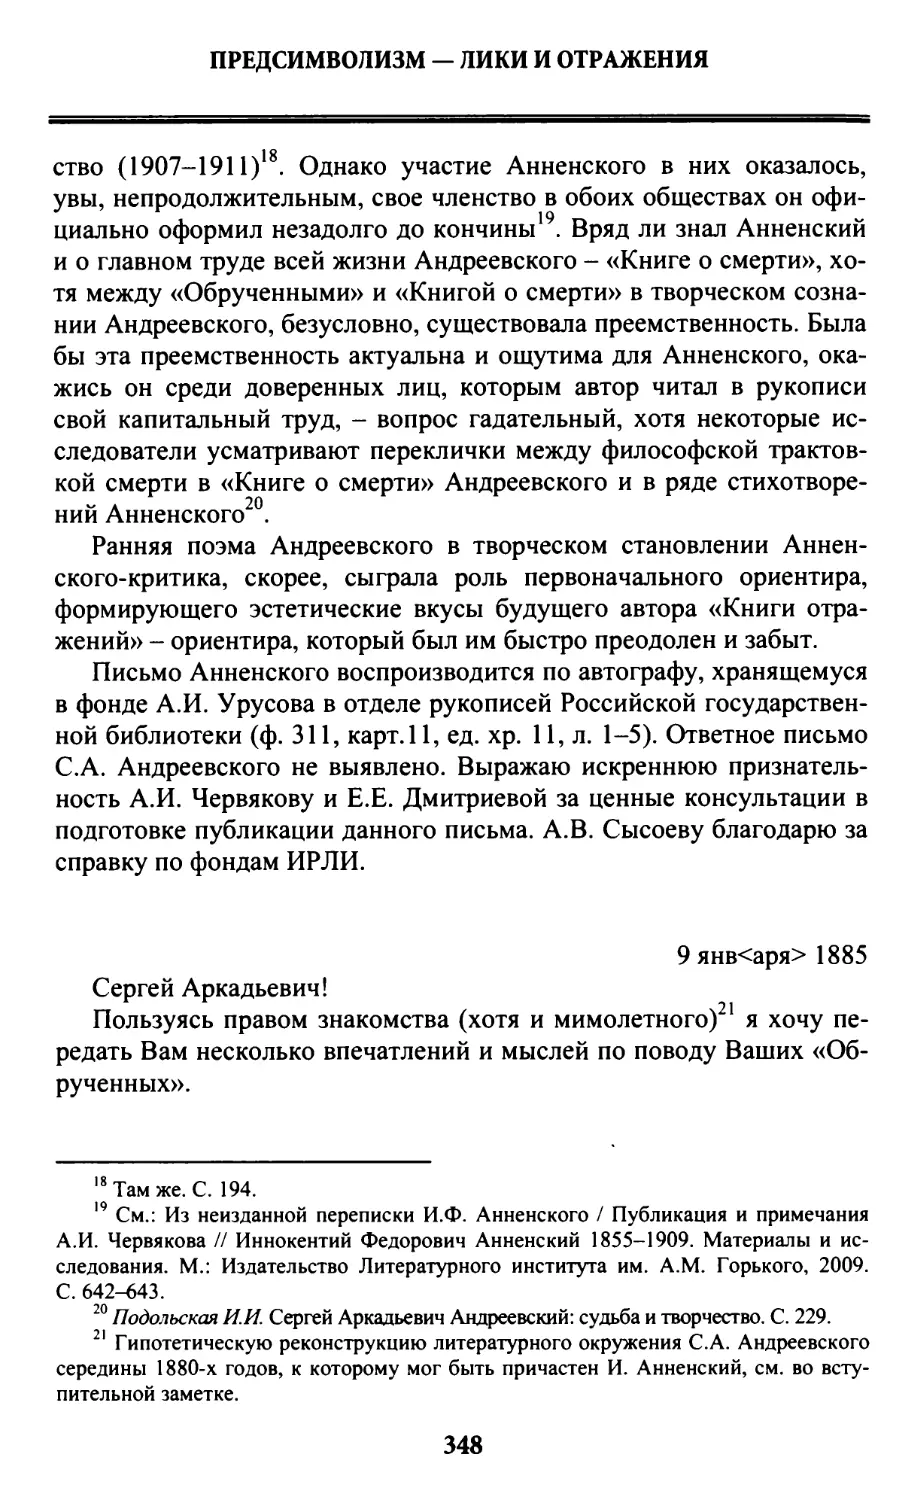 Письмо С.А. Андреевскому, 9 января 1885 г.